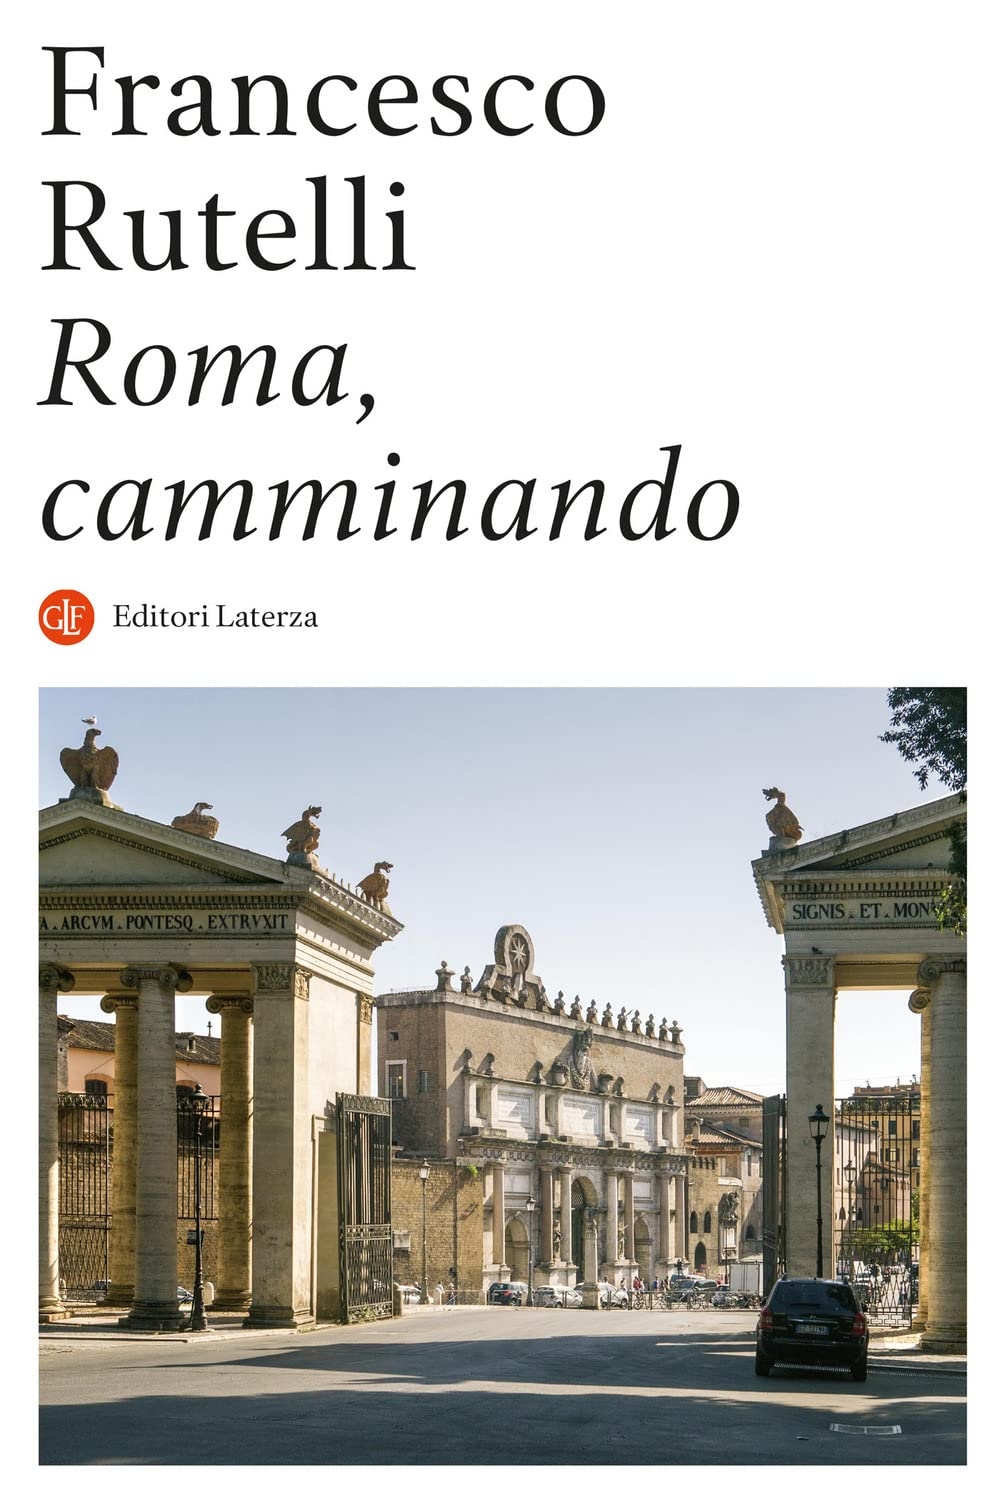 Francesco Rutelli – Roma, camminando (Laterza, Roma Bari 2022)